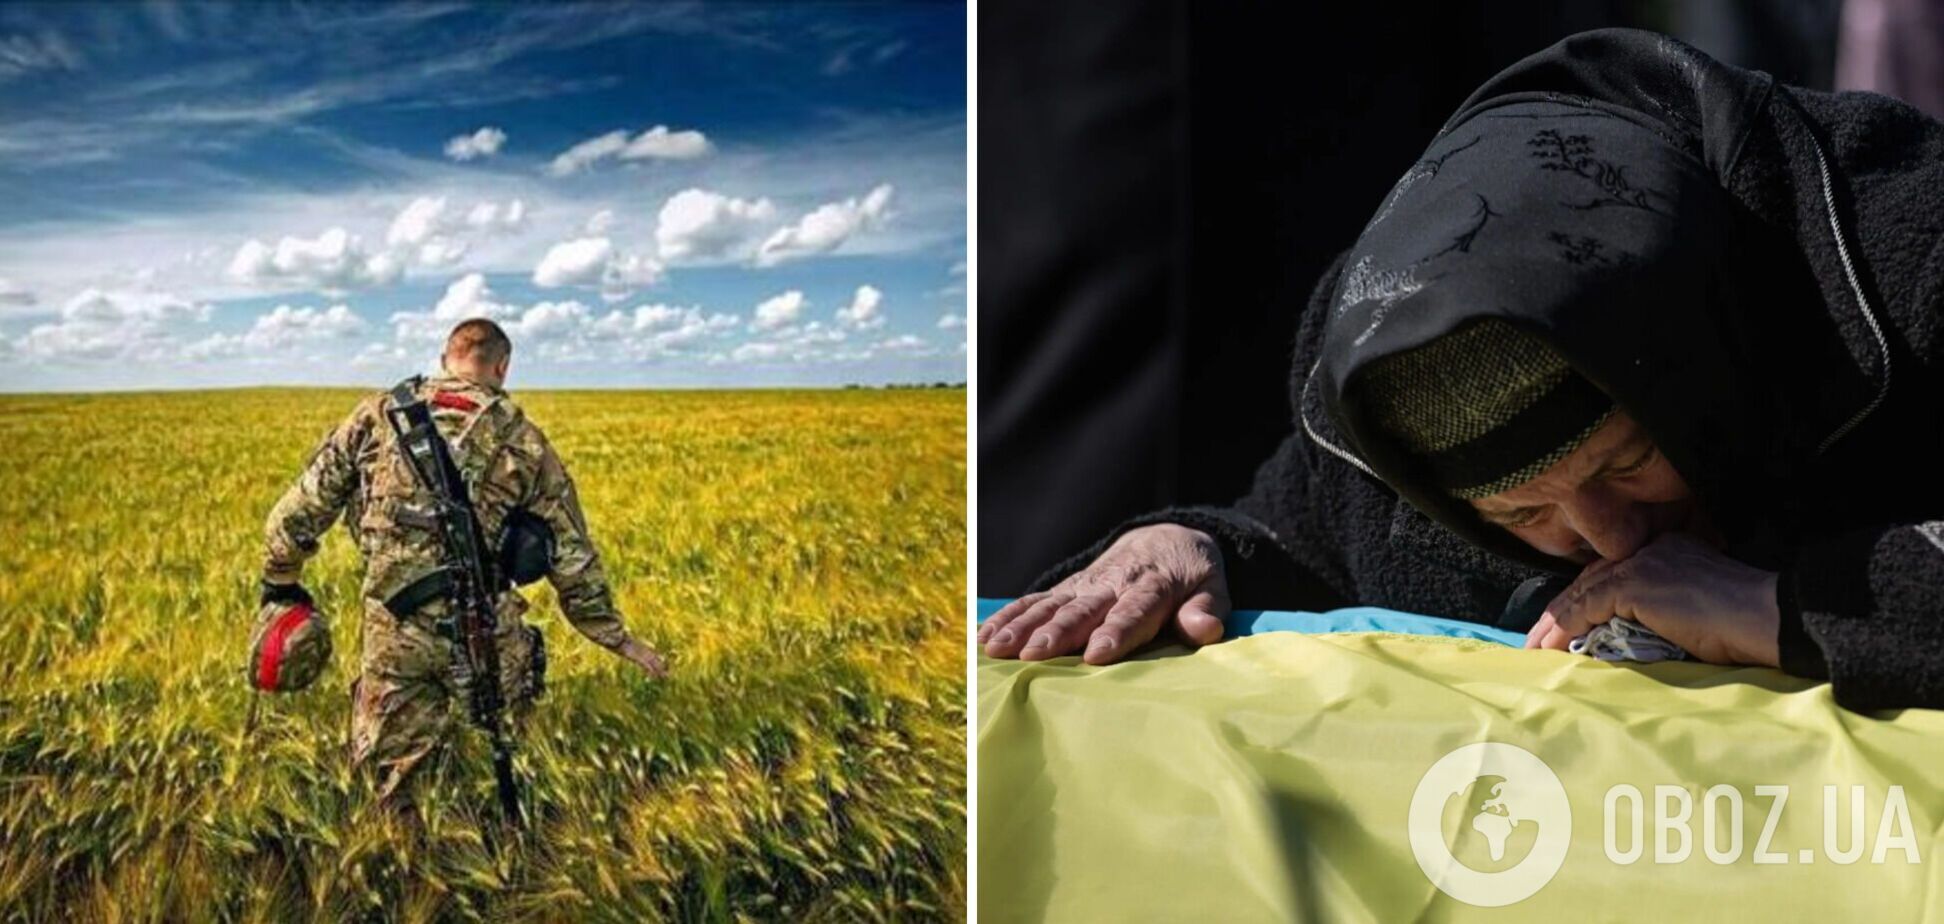 'Розриває серце': мережу вразило фото матері, яка бігла назустріч вбитому сину-захиснику України 